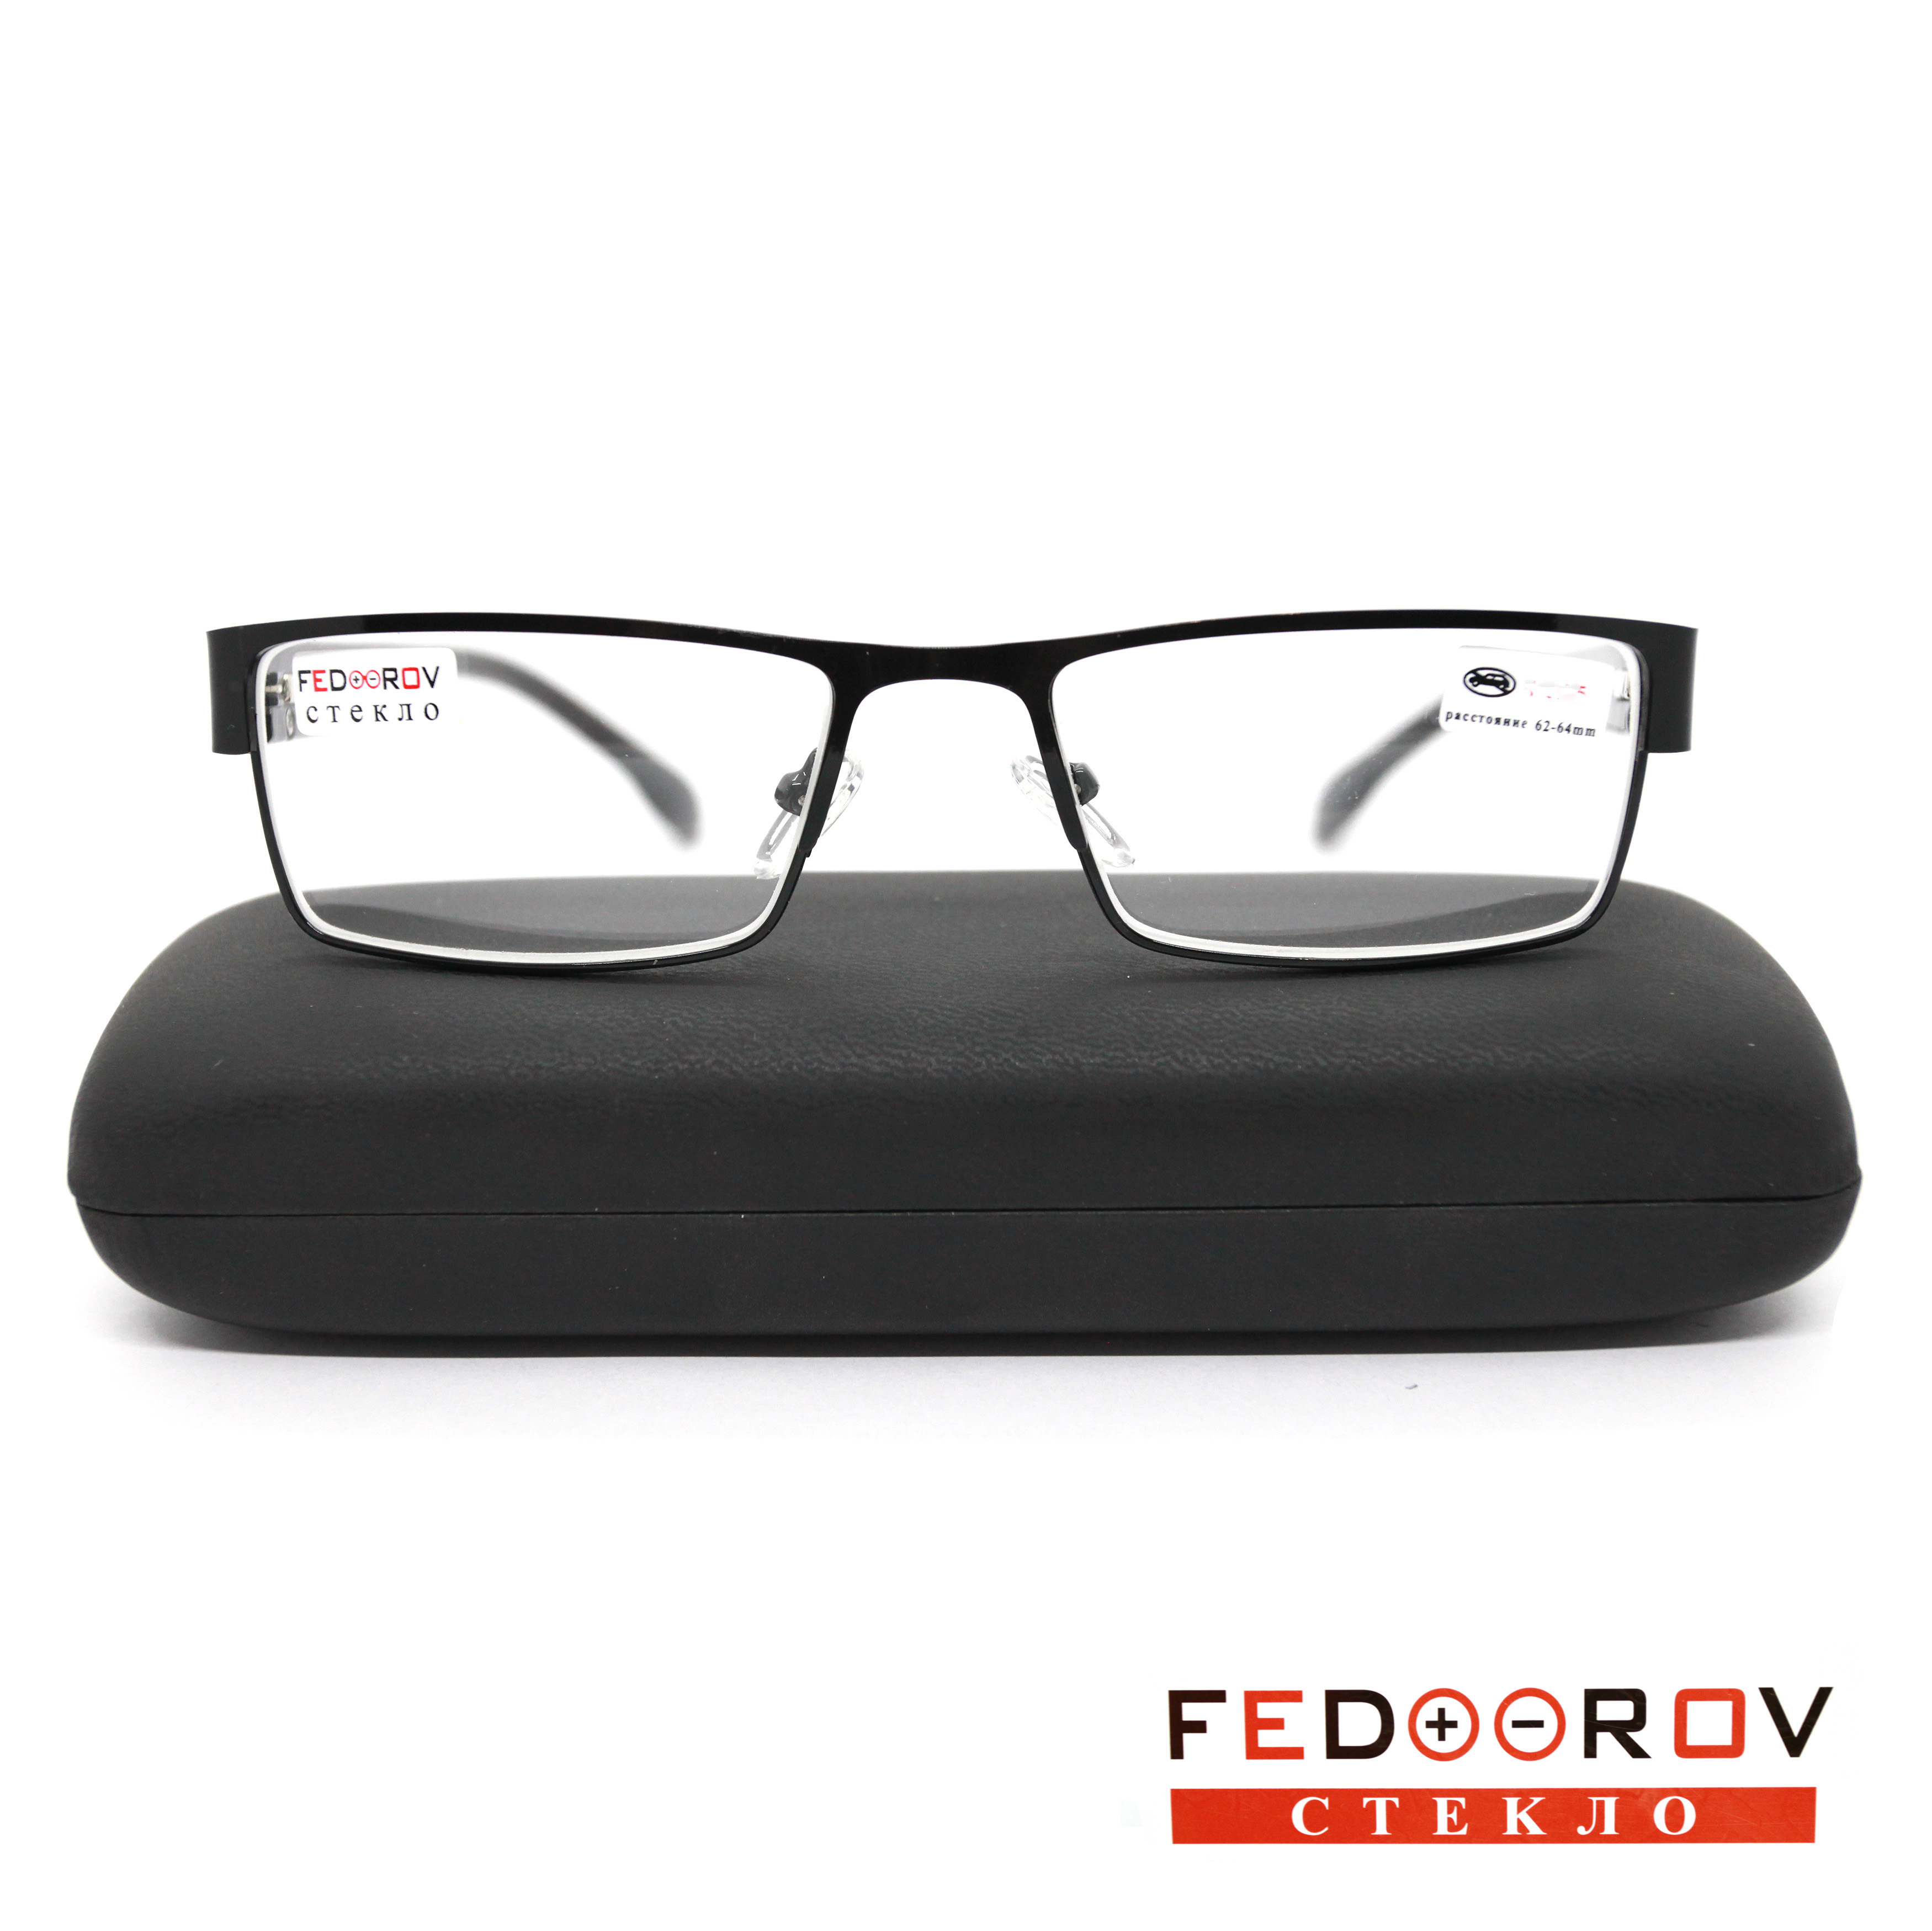 Готовые очки Fedrov 019, со стеклянной линзой, +3,00, c футляром, черный, РЦ 62-64